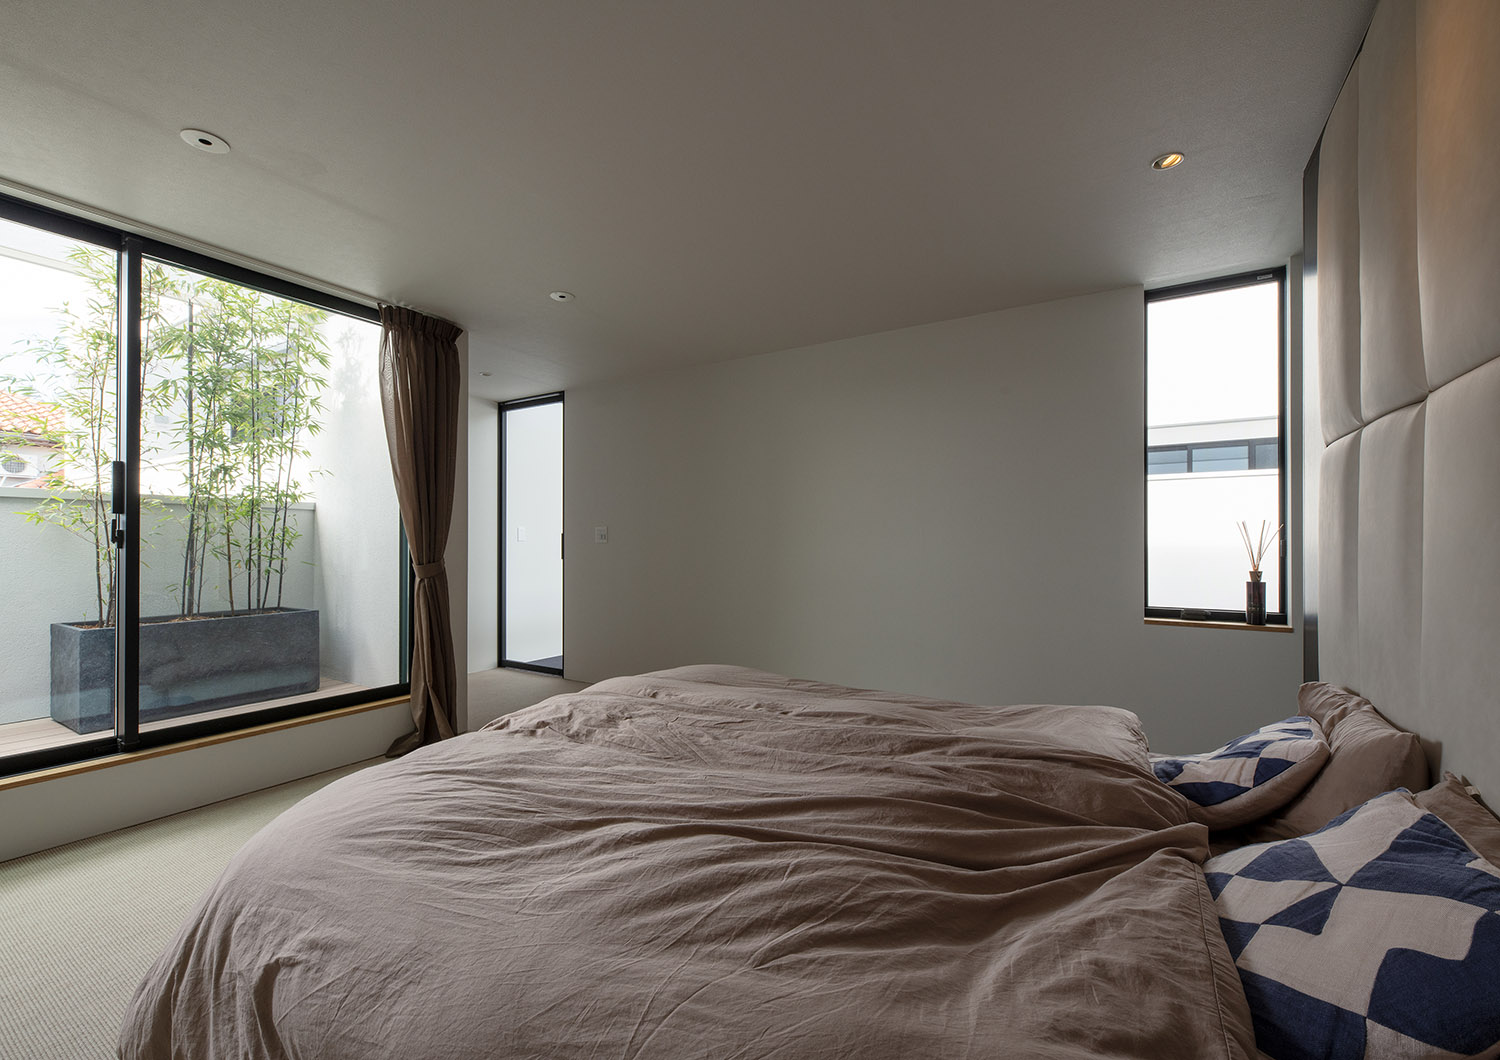 ベッドから植栽が置かれたバルコニーが見える寝室・デザイン住宅